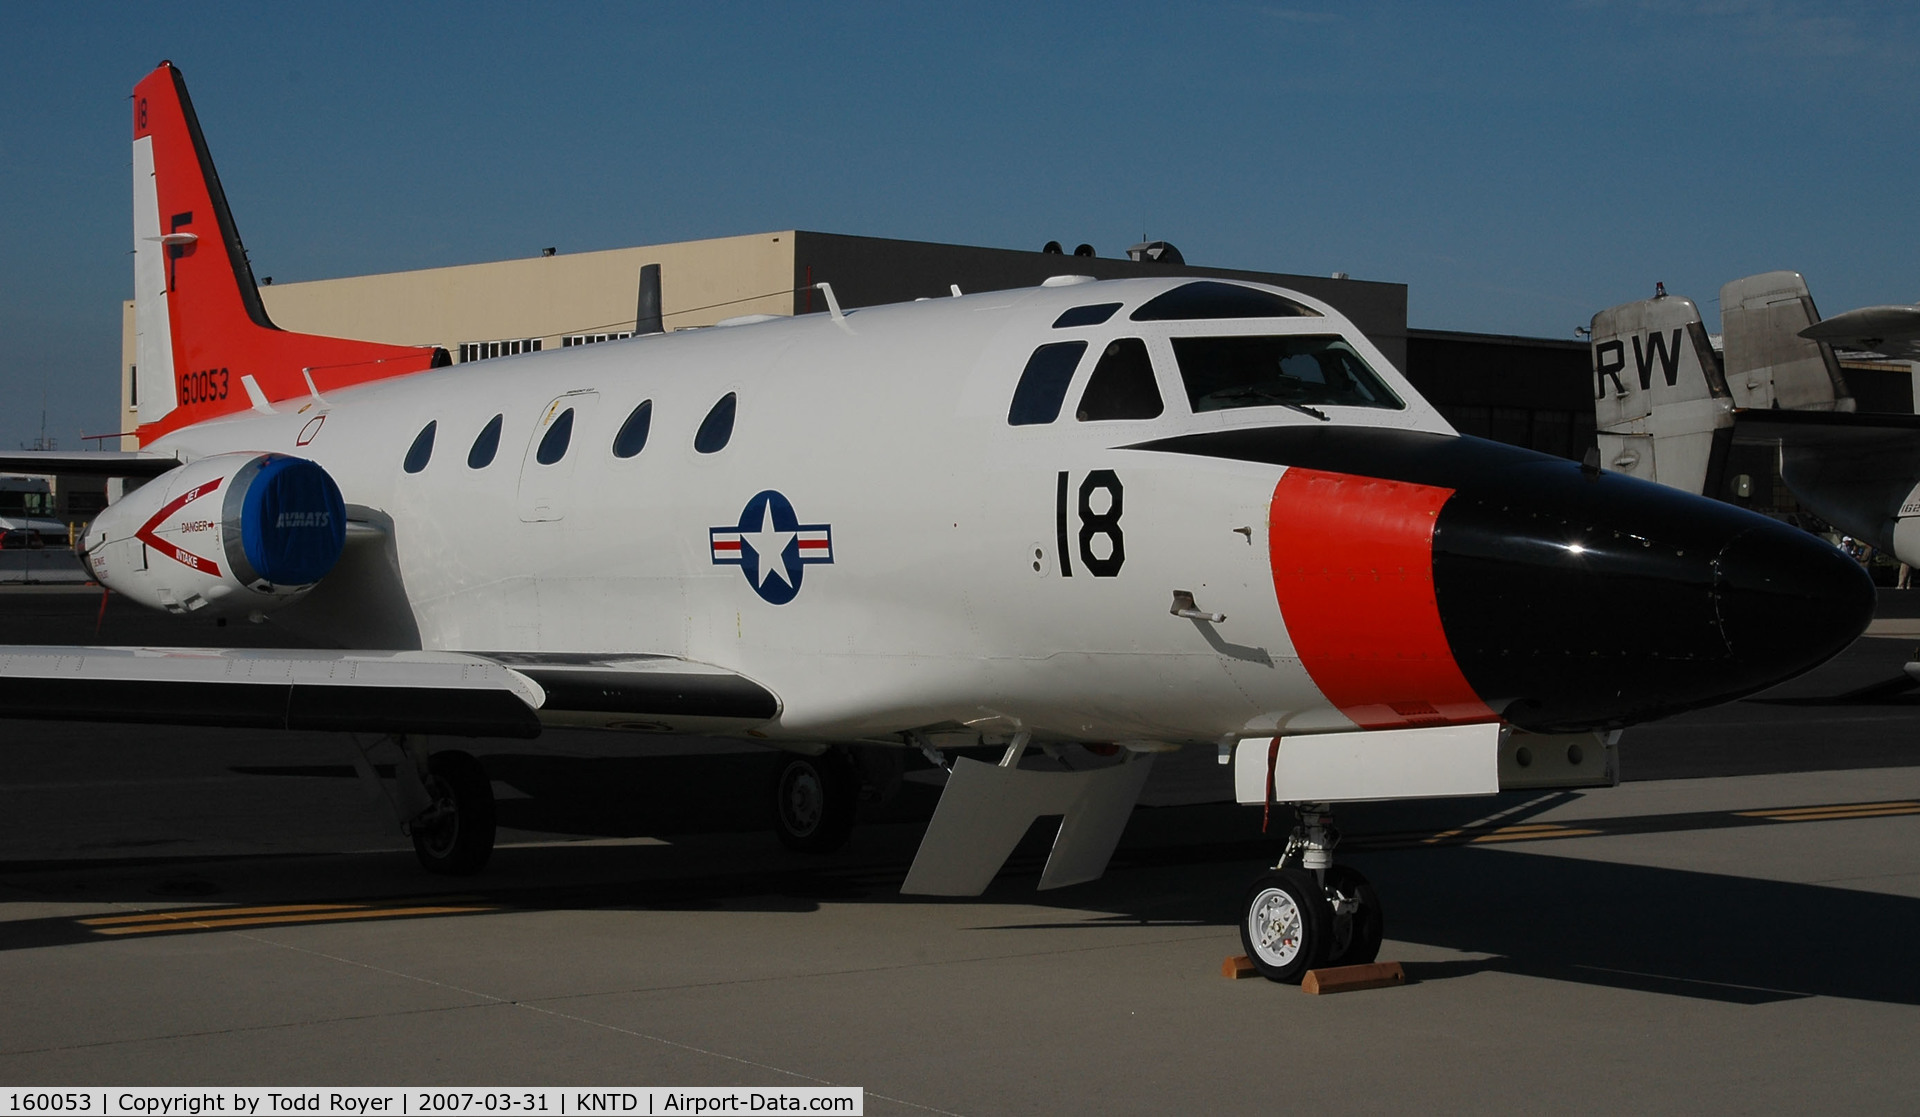 160053, North American Rockwell CT-39G (N-265) Sabreliner C/N 306-104, Point Mugu Airshow 2007